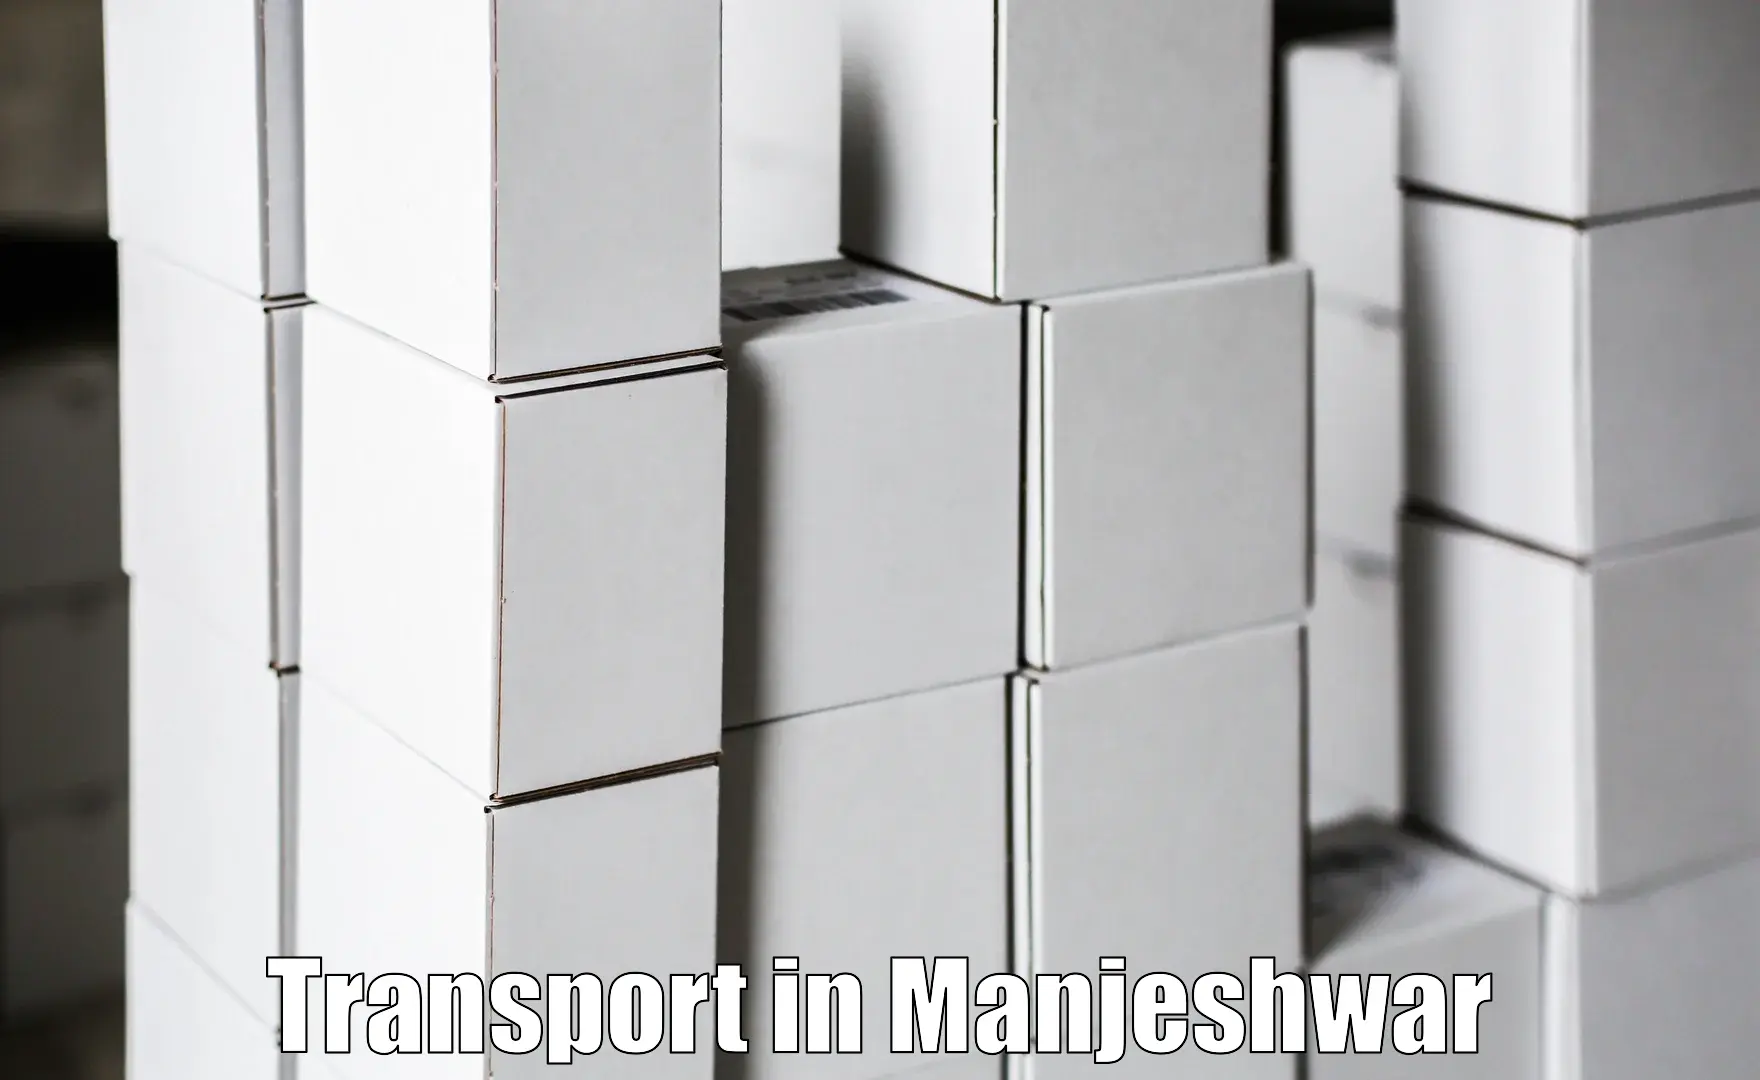 Road transport services in Manjeshwar